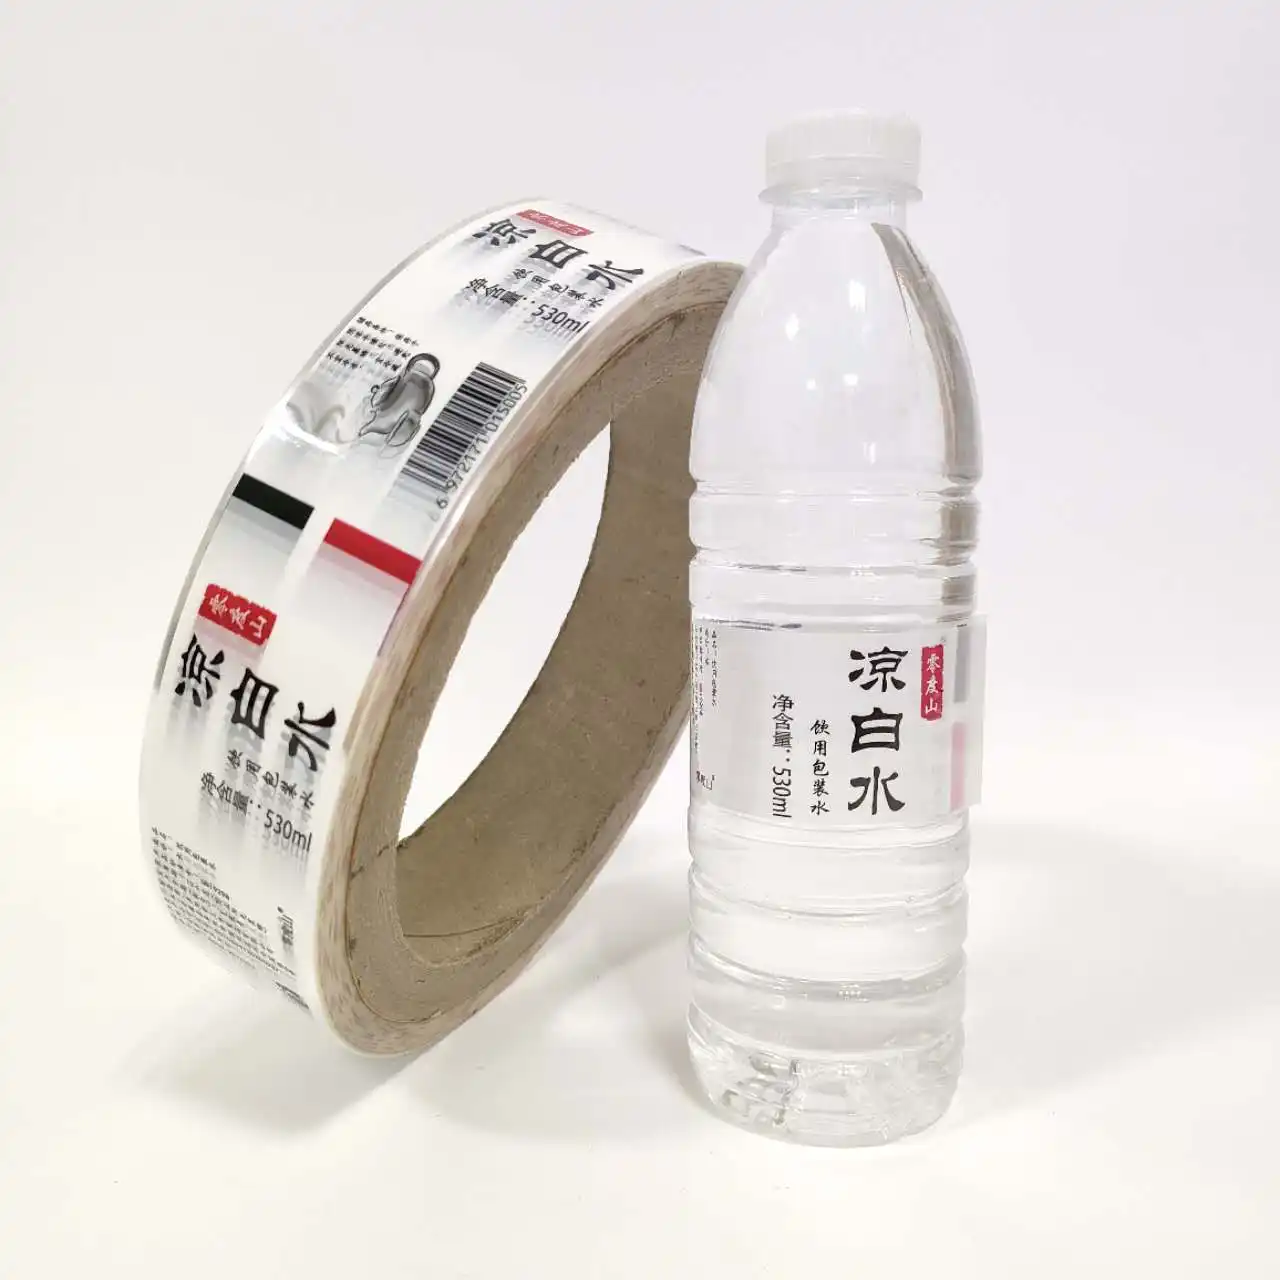 Пластиковая пленка для печати на бутылке с водой по индивидуальному заказу